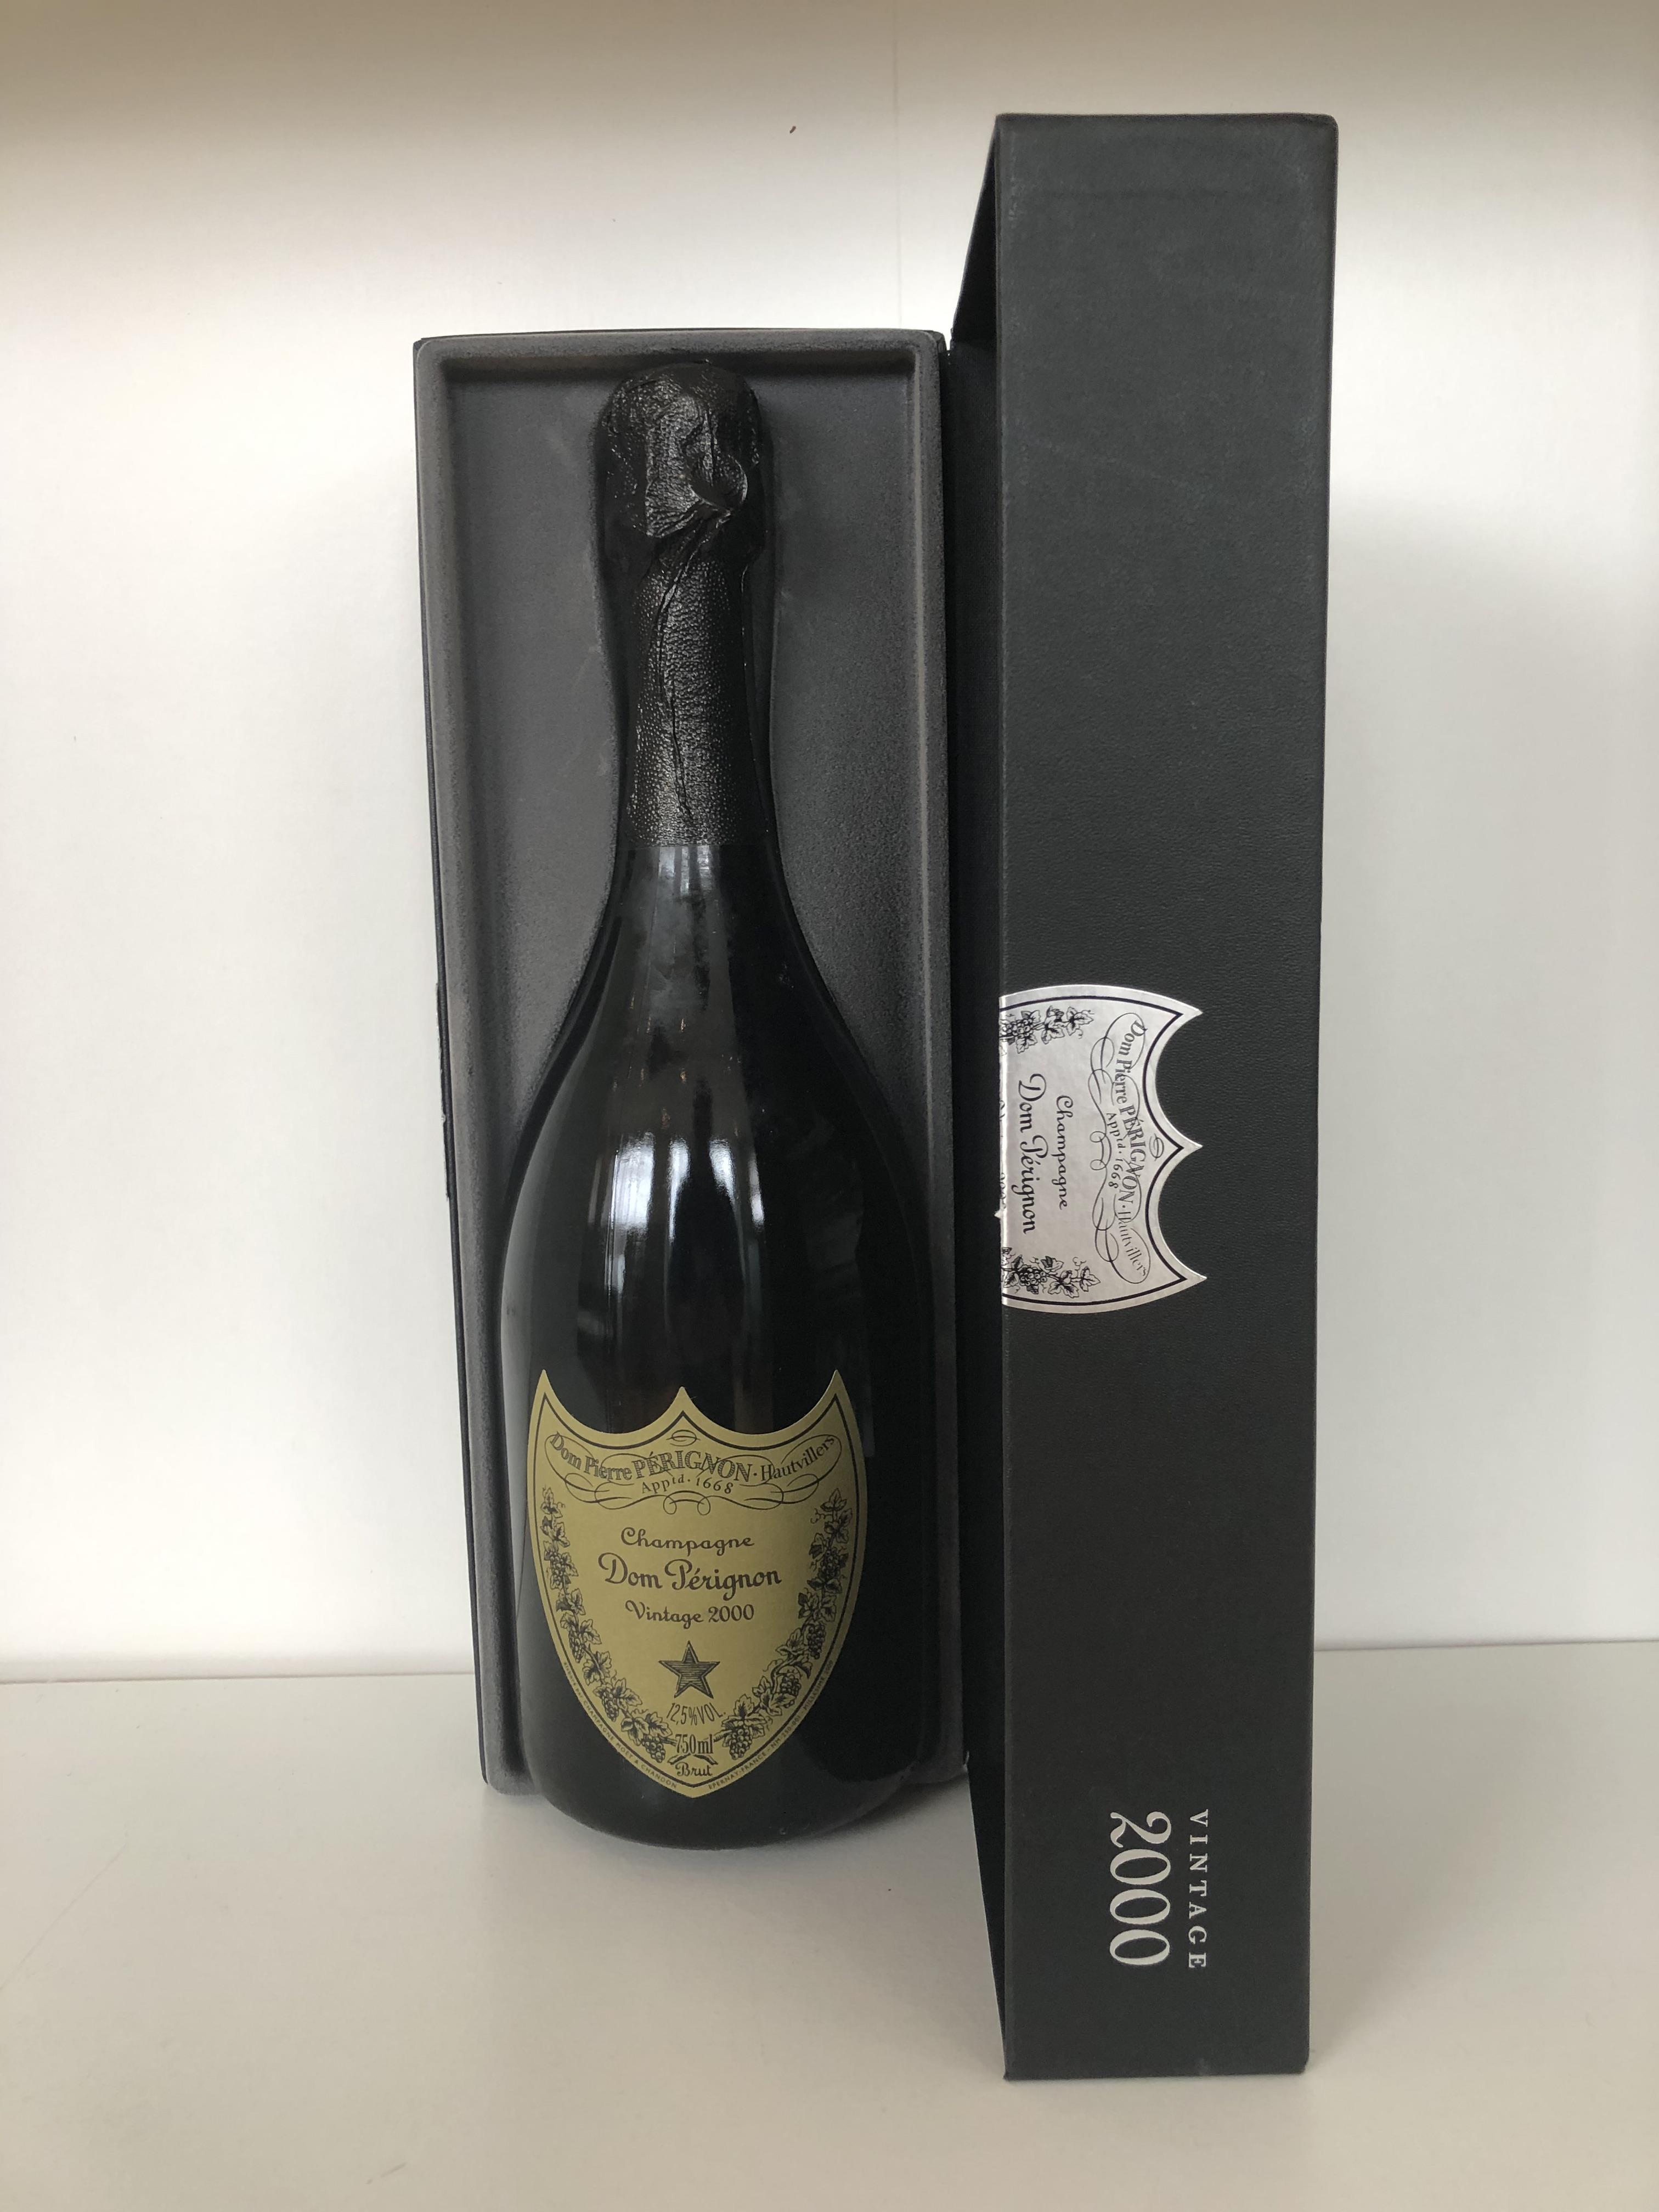 2000 Dom Perignon, Moet et Chandon, Champagne, France, 1 bottle